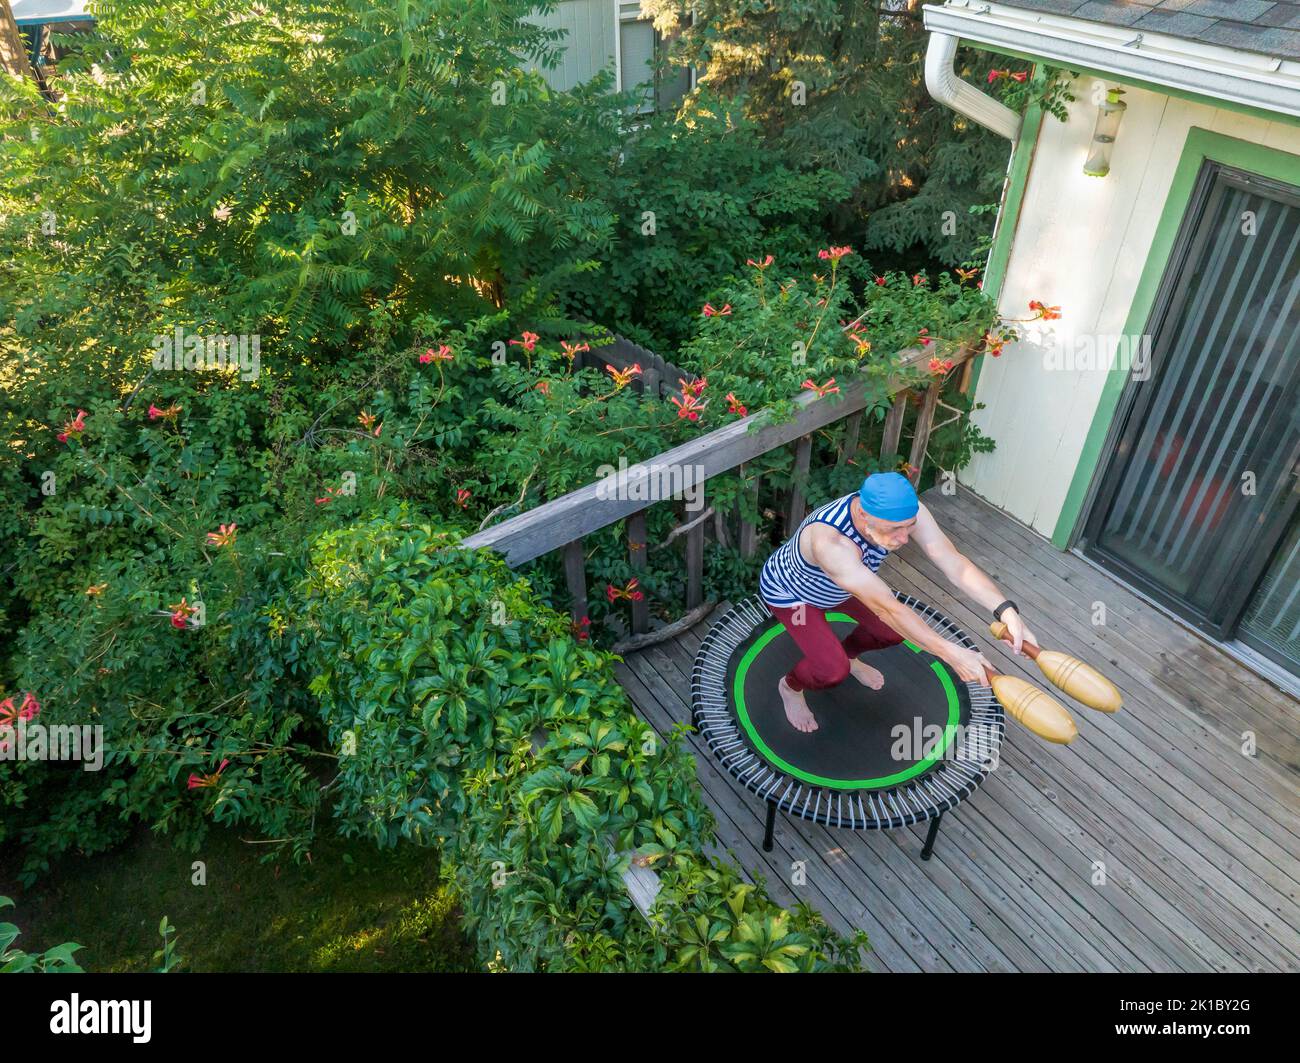 El hombre mayor está rebotando en un mini trampolín con palos indios de madera en su patio trasero, vista aérea de finales de verano en Colorado Foto de stock